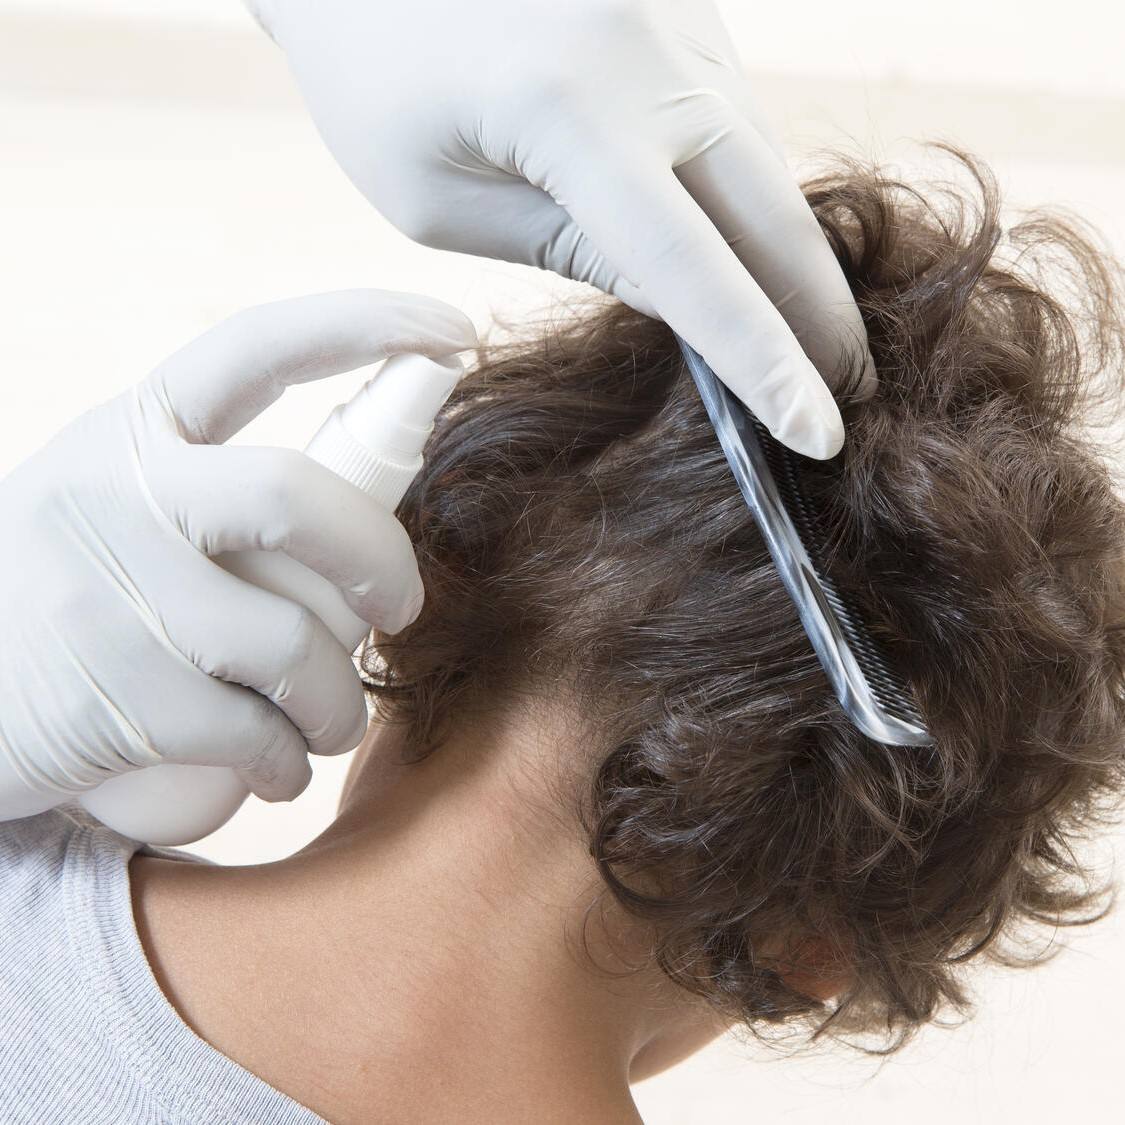 Осмотр и обработка педикулеза. Обработка волосистой части головы. Стрижка волос при педикулезе. Обработать волосы пациента.